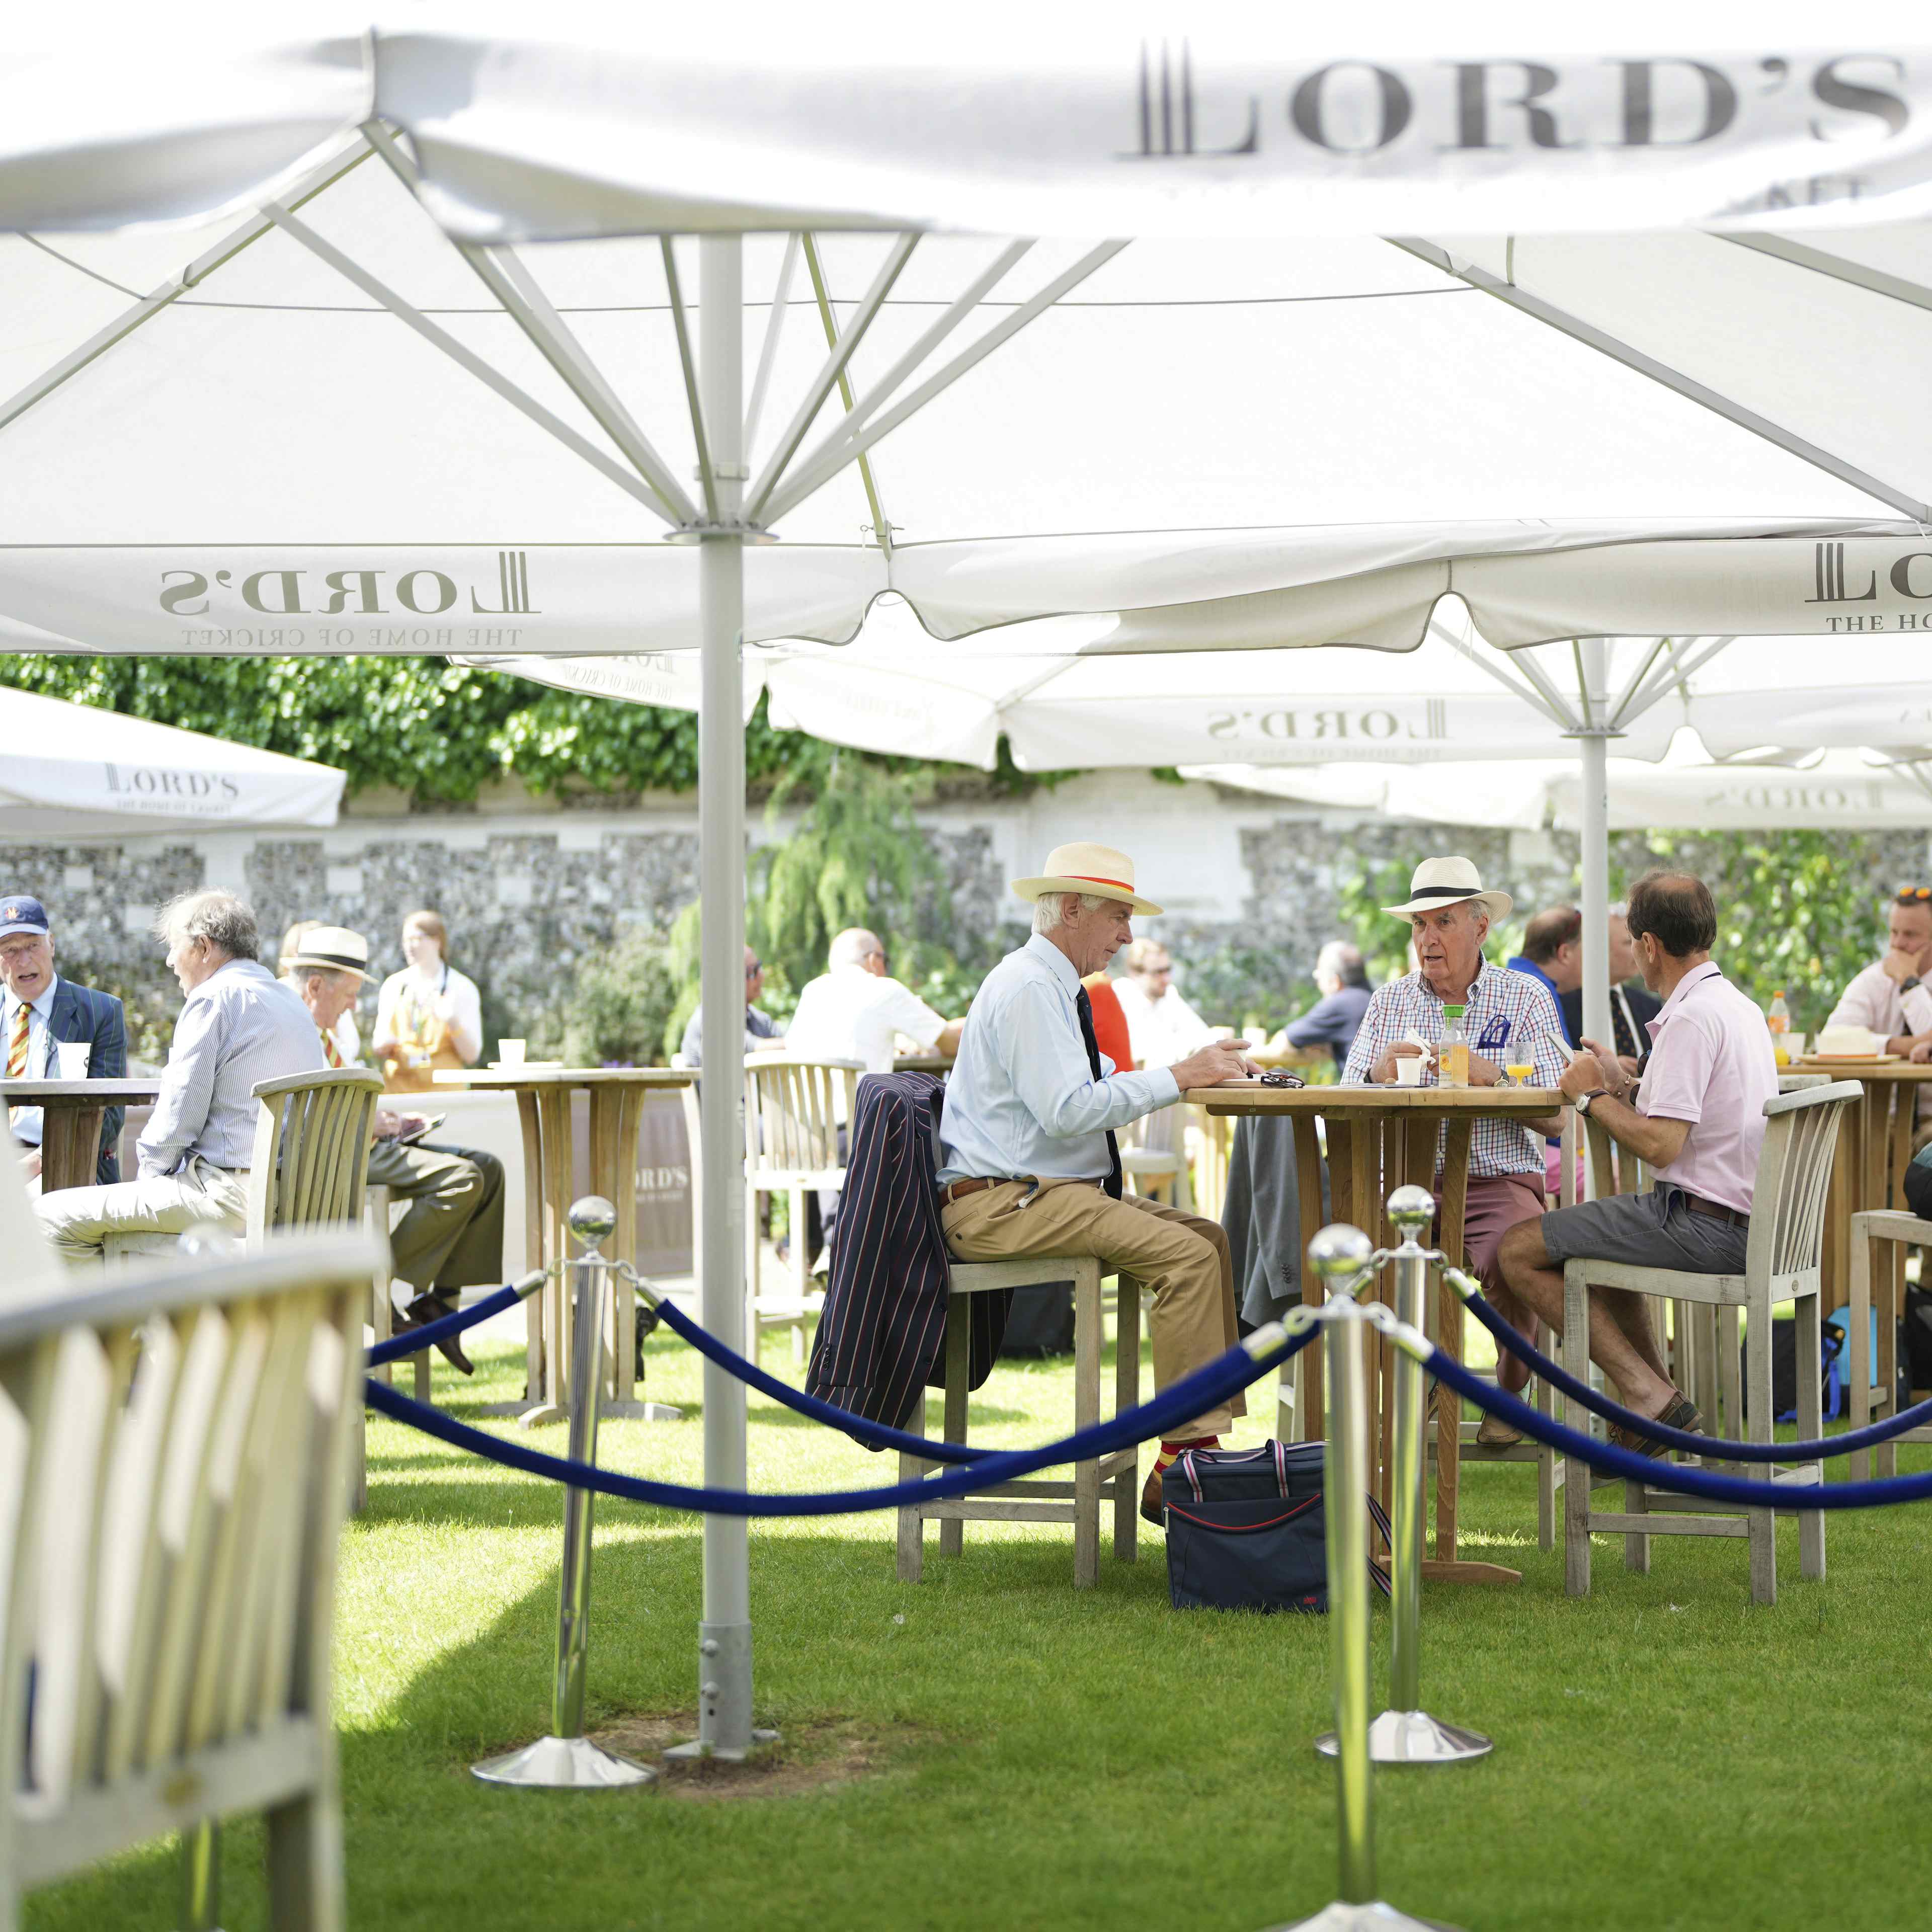 Lord's Cricket Ground - Harris Garden image 3